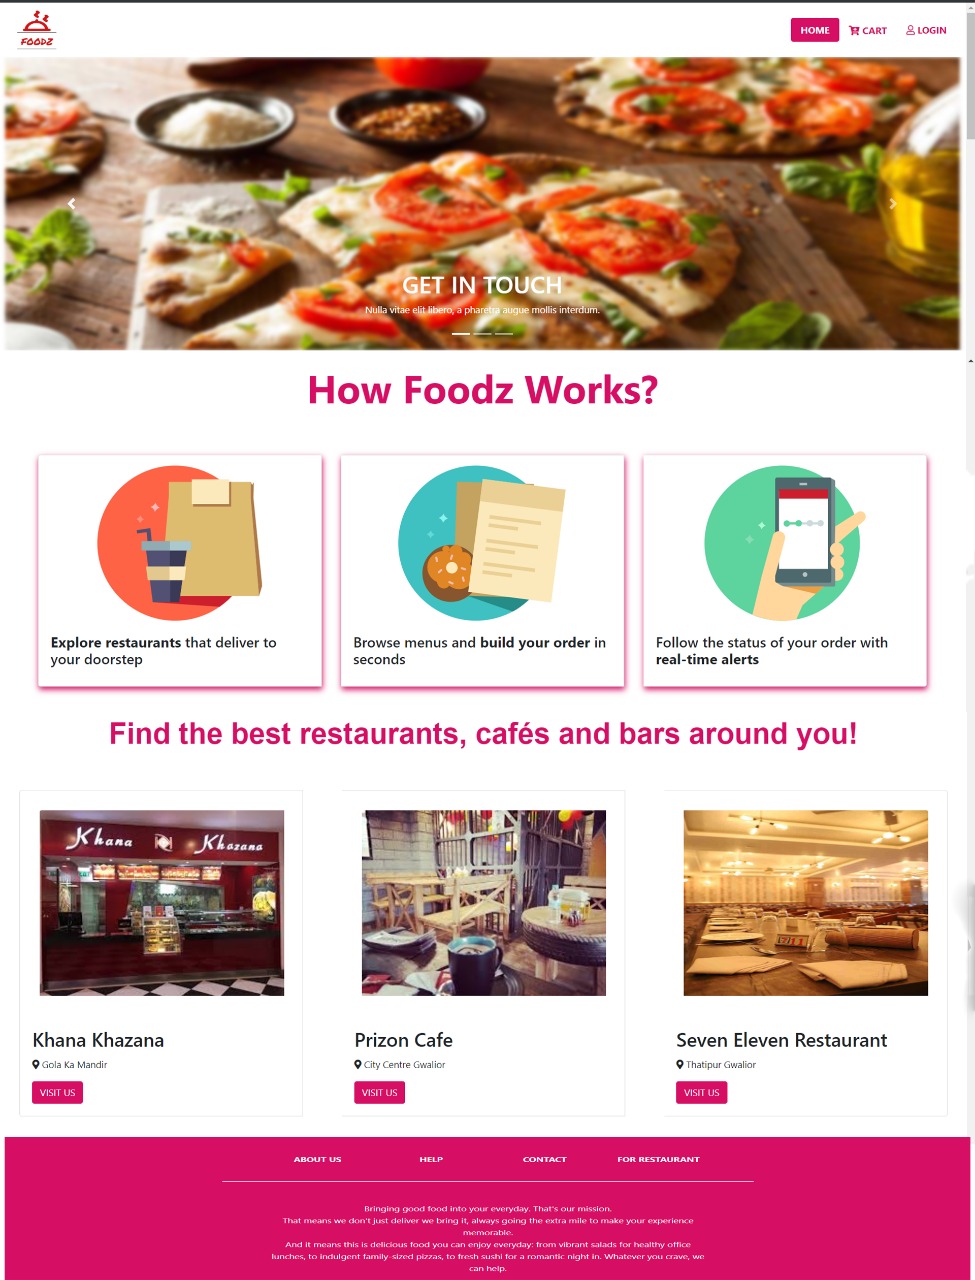 Foodz: An Online Food Ordering Website